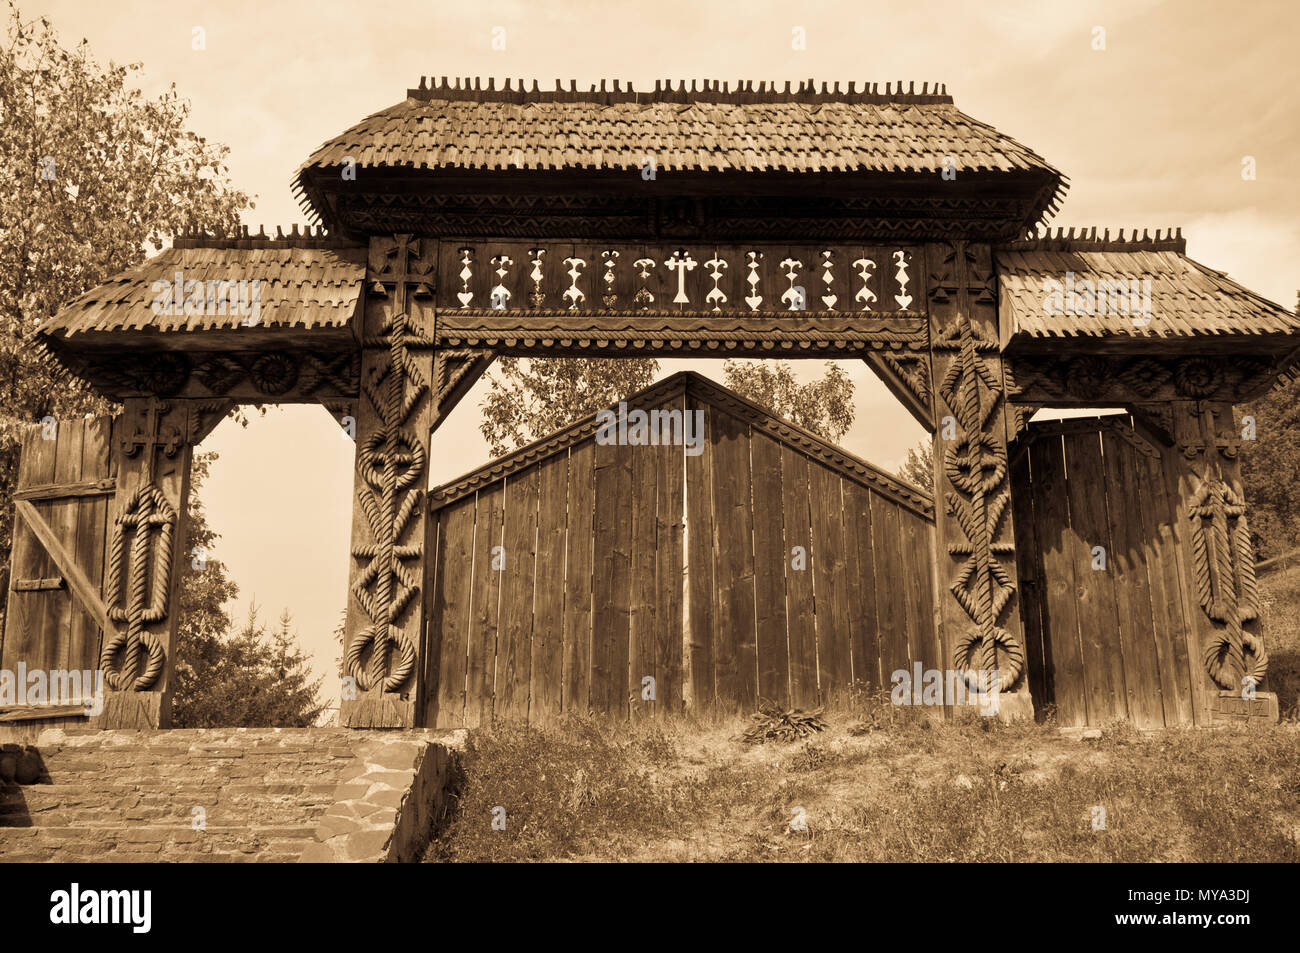 Porte en bois sculpté traditionnel de la région de Maramures, Roumanie, tons sépia. Banque D'Images